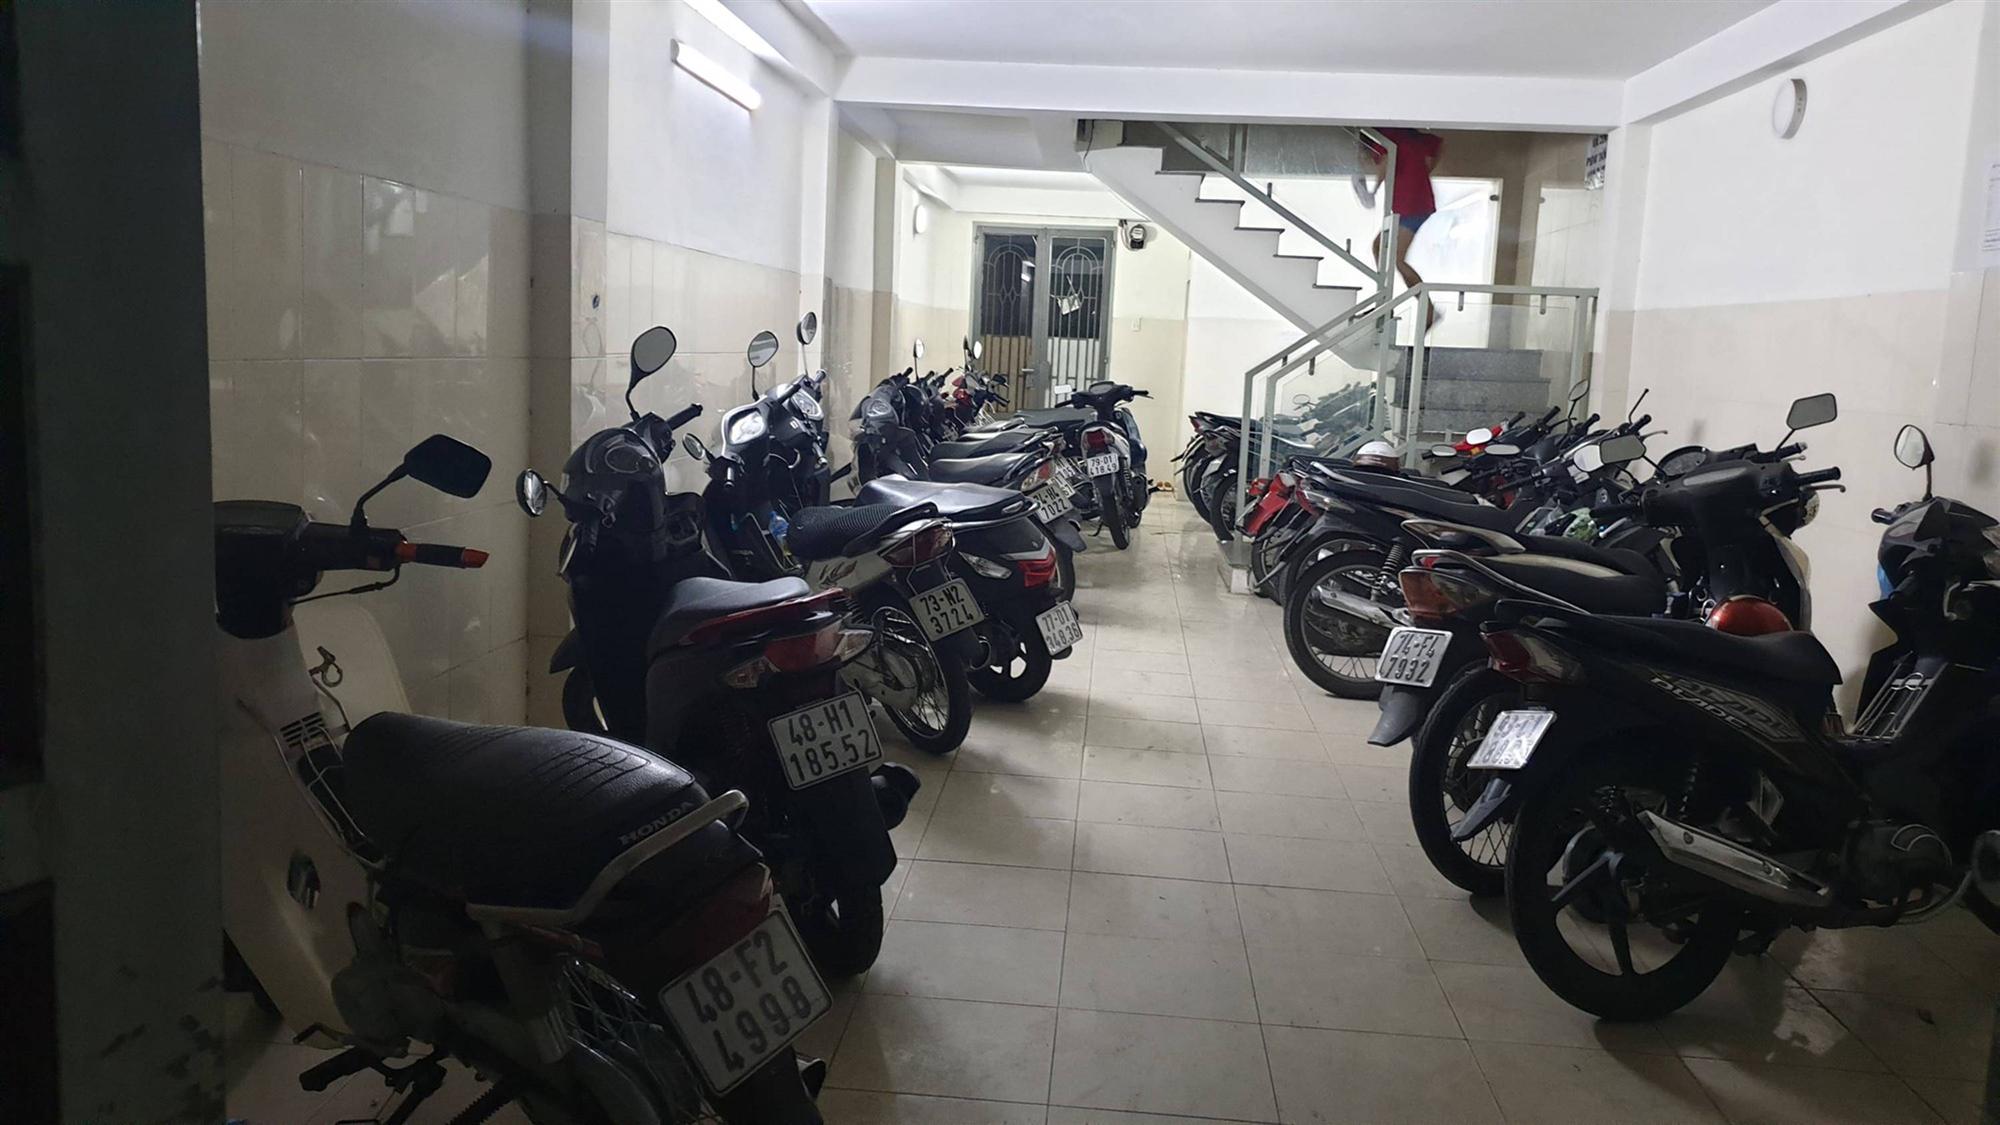 Bắt giữ nhóm trộm đột nhập dãy trọ cuỗm 9 xe máy trong đêm ở Sài Gòn-1